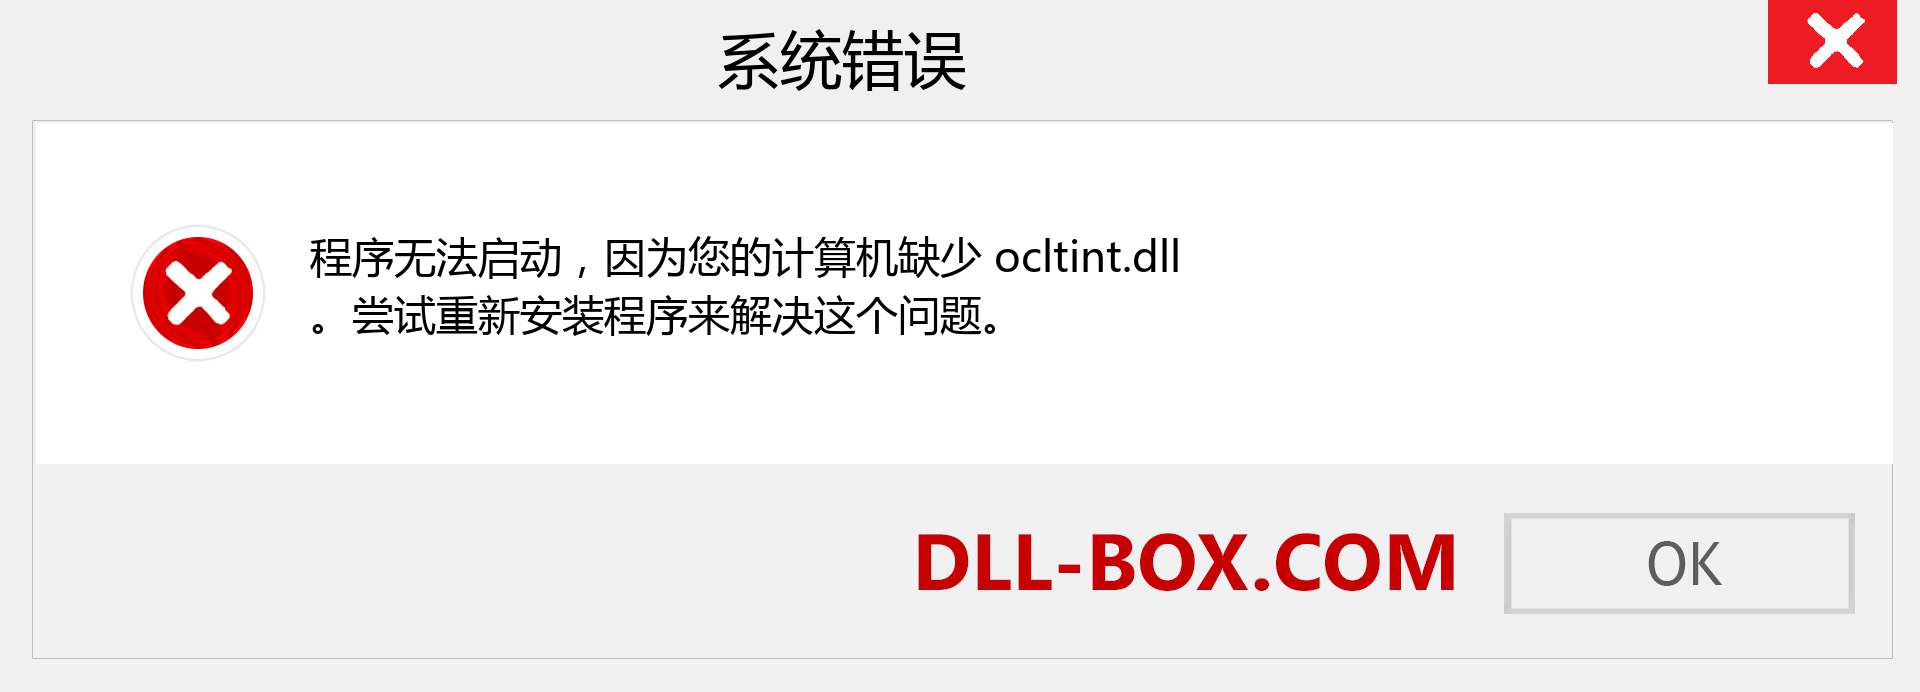 ocltint.dll 文件丢失？。 适用于 Windows 7、8、10 的下载 - 修复 Windows、照片、图像上的 ocltint dll 丢失错误